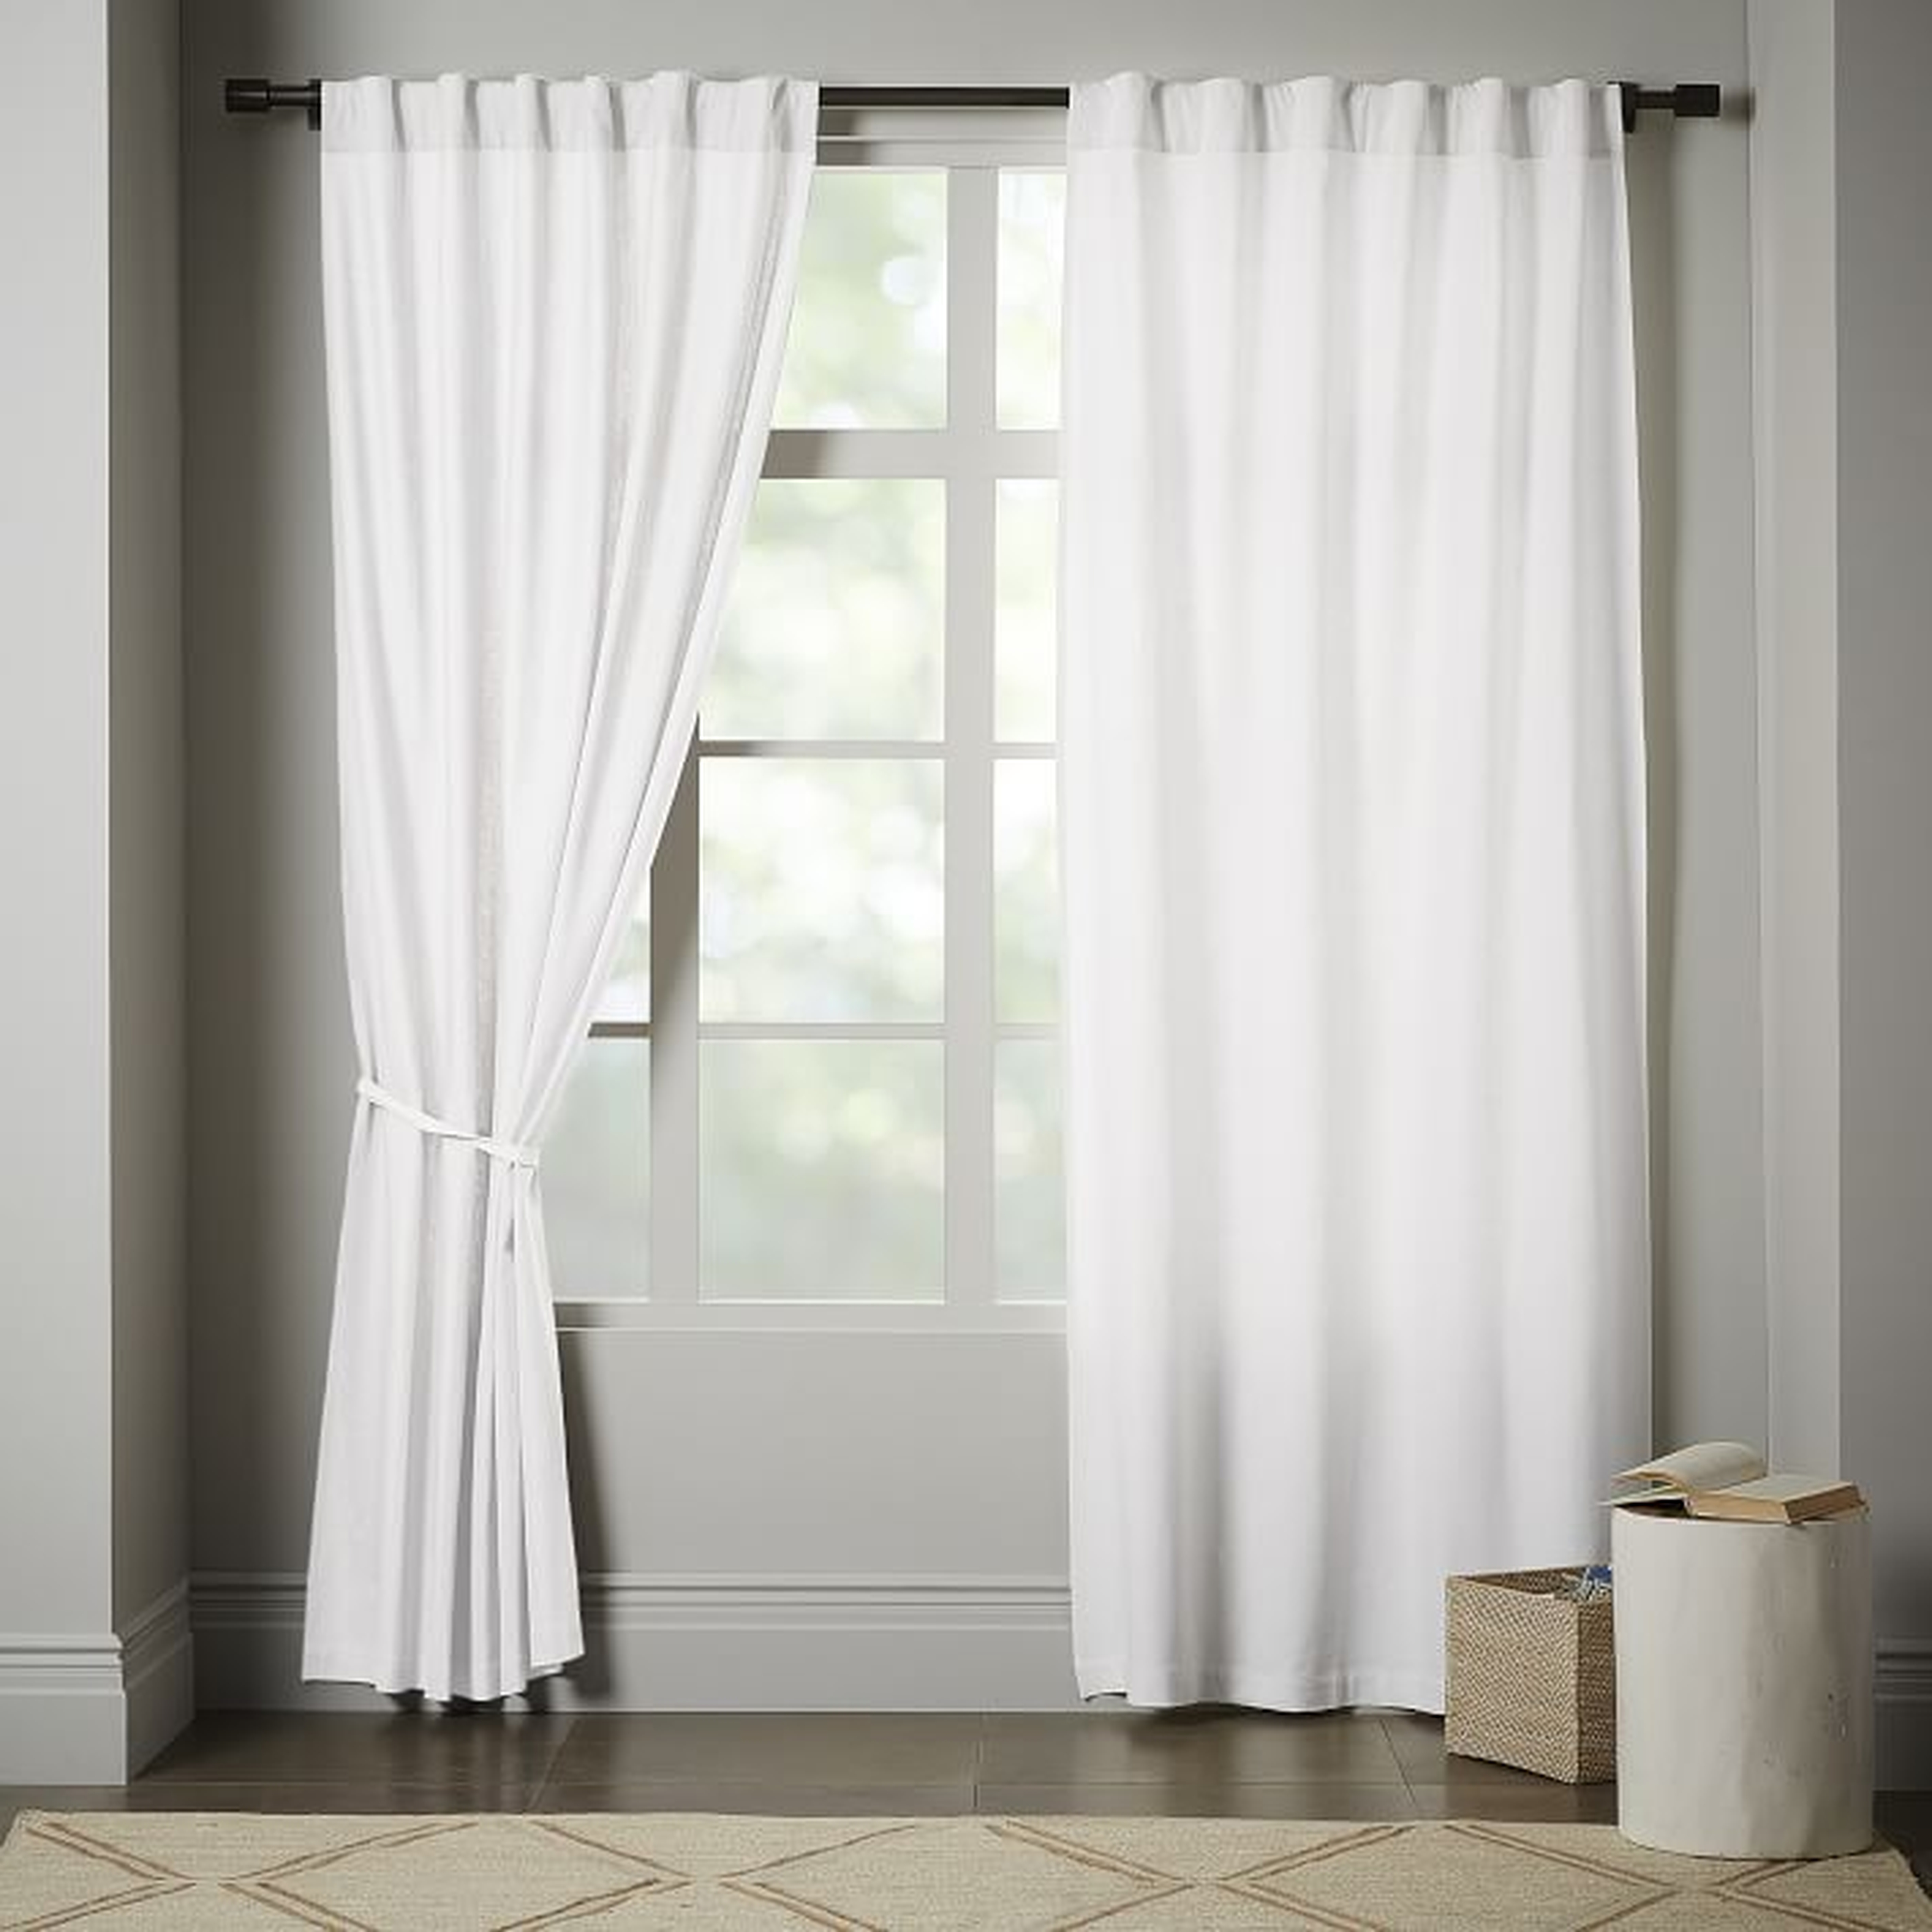 Linen Cotton Pole Pocket Curtain + Blackout Panel - White - 48"x108" - West Elm